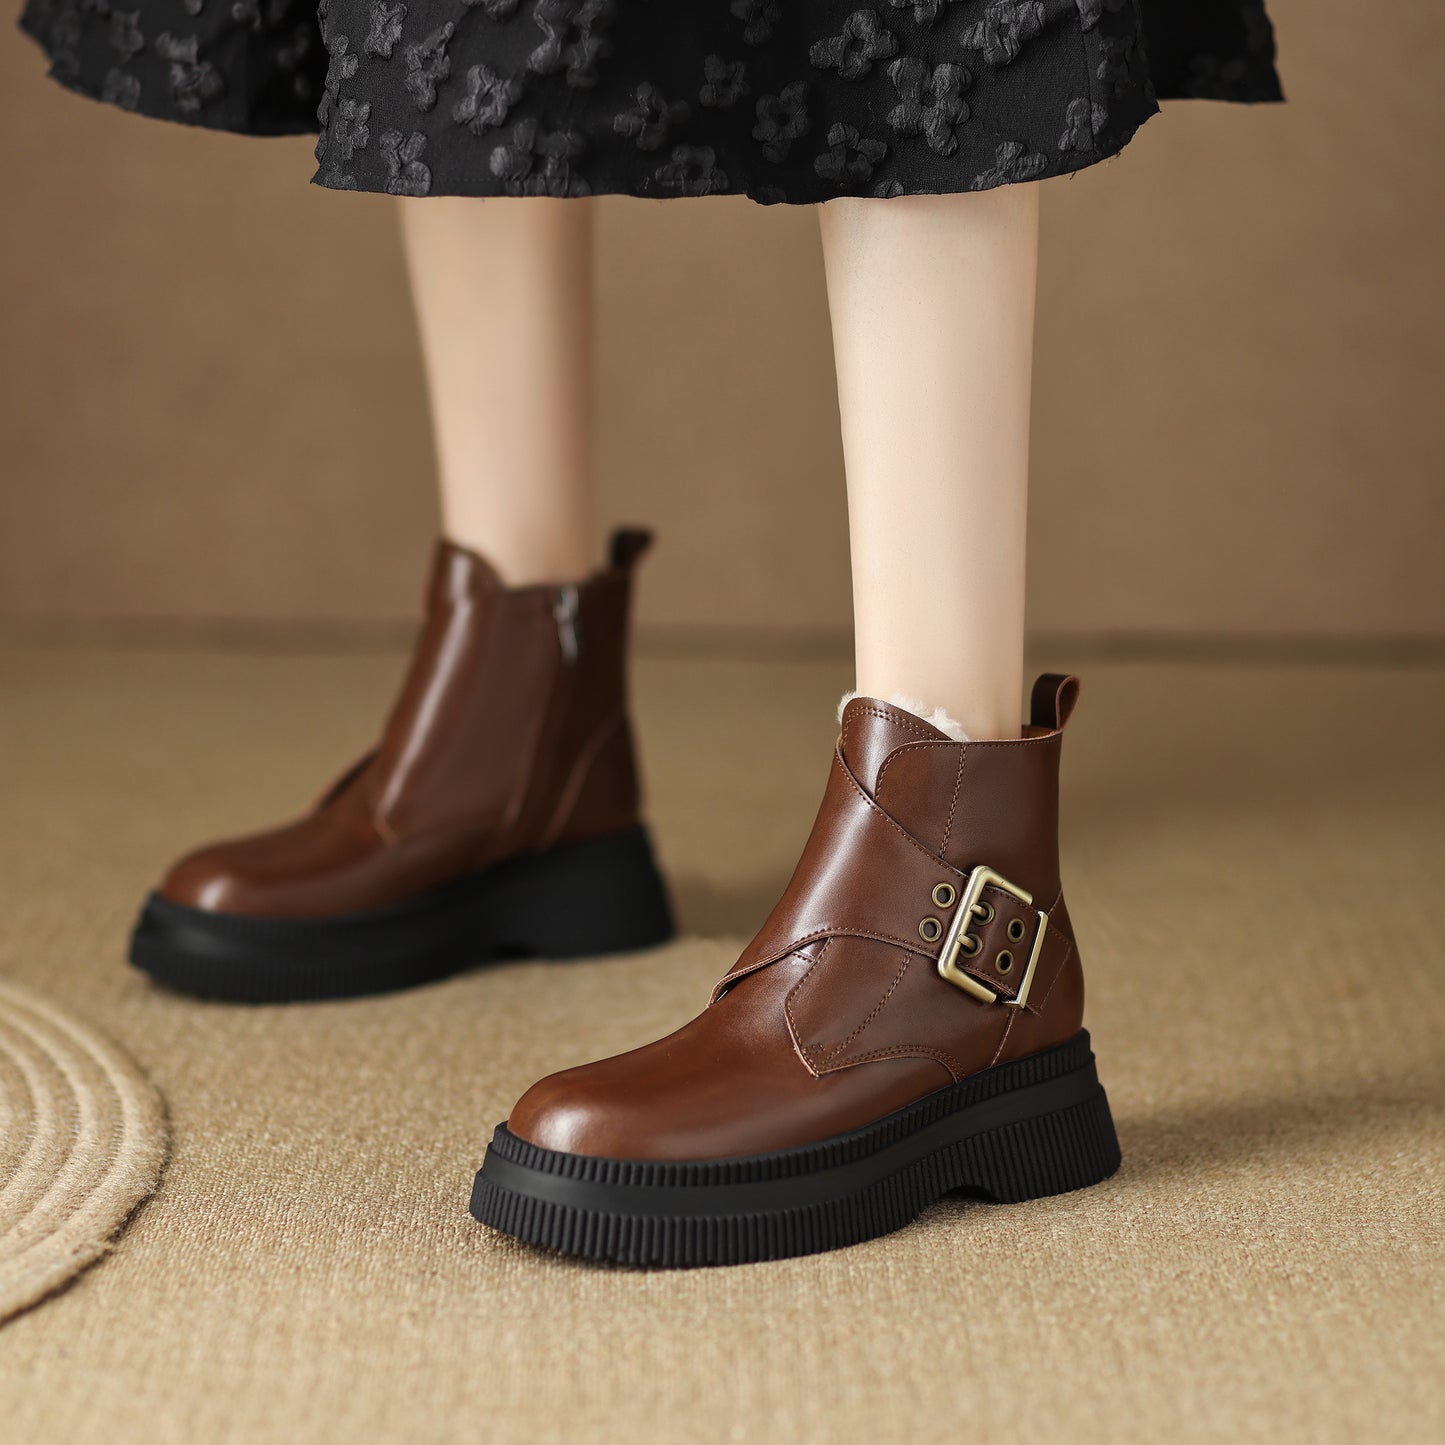 TinaCus Handmade Women's Genuine Leather Side Zip Buckle Round Toe Low Block Heel Platform Boots